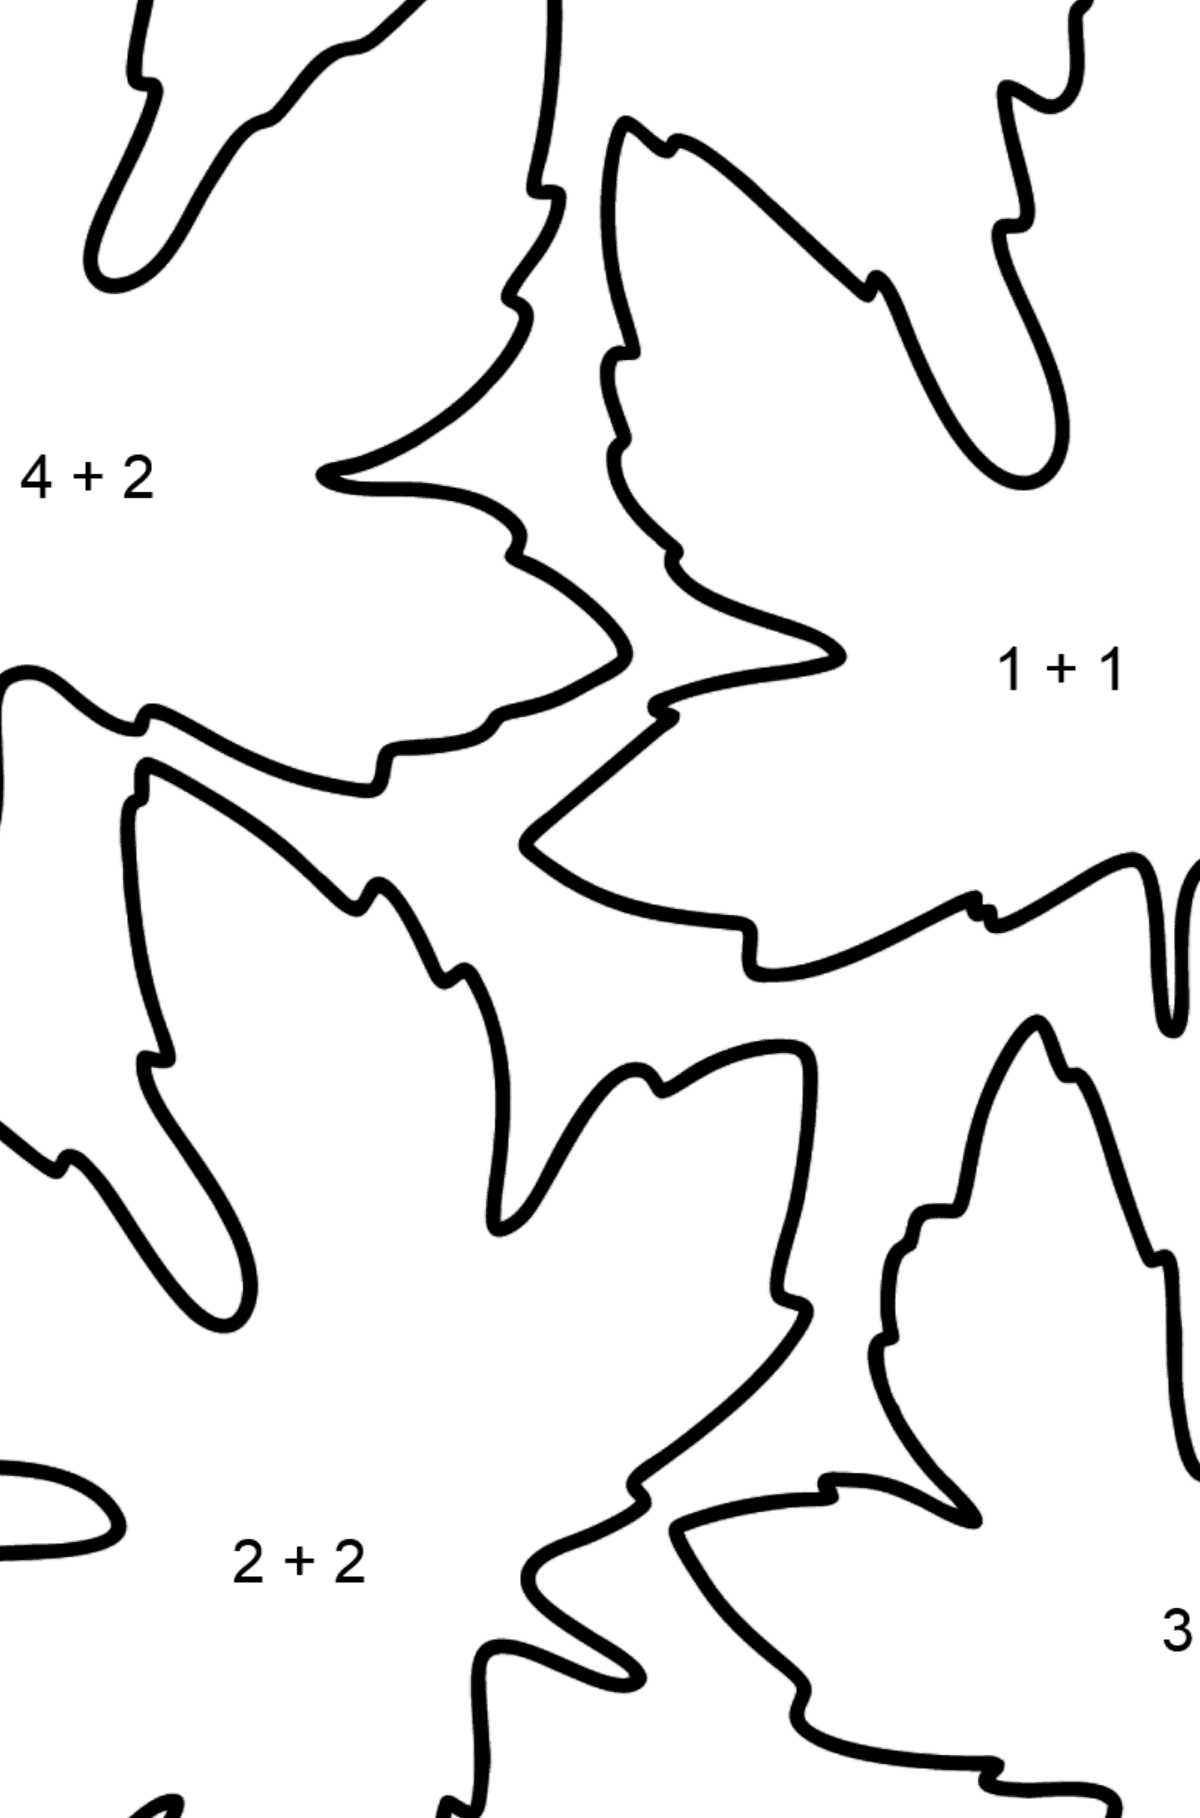 Desenho para colorir de Maple Leaves - Colorindo com Matemática - Soma para Crianças